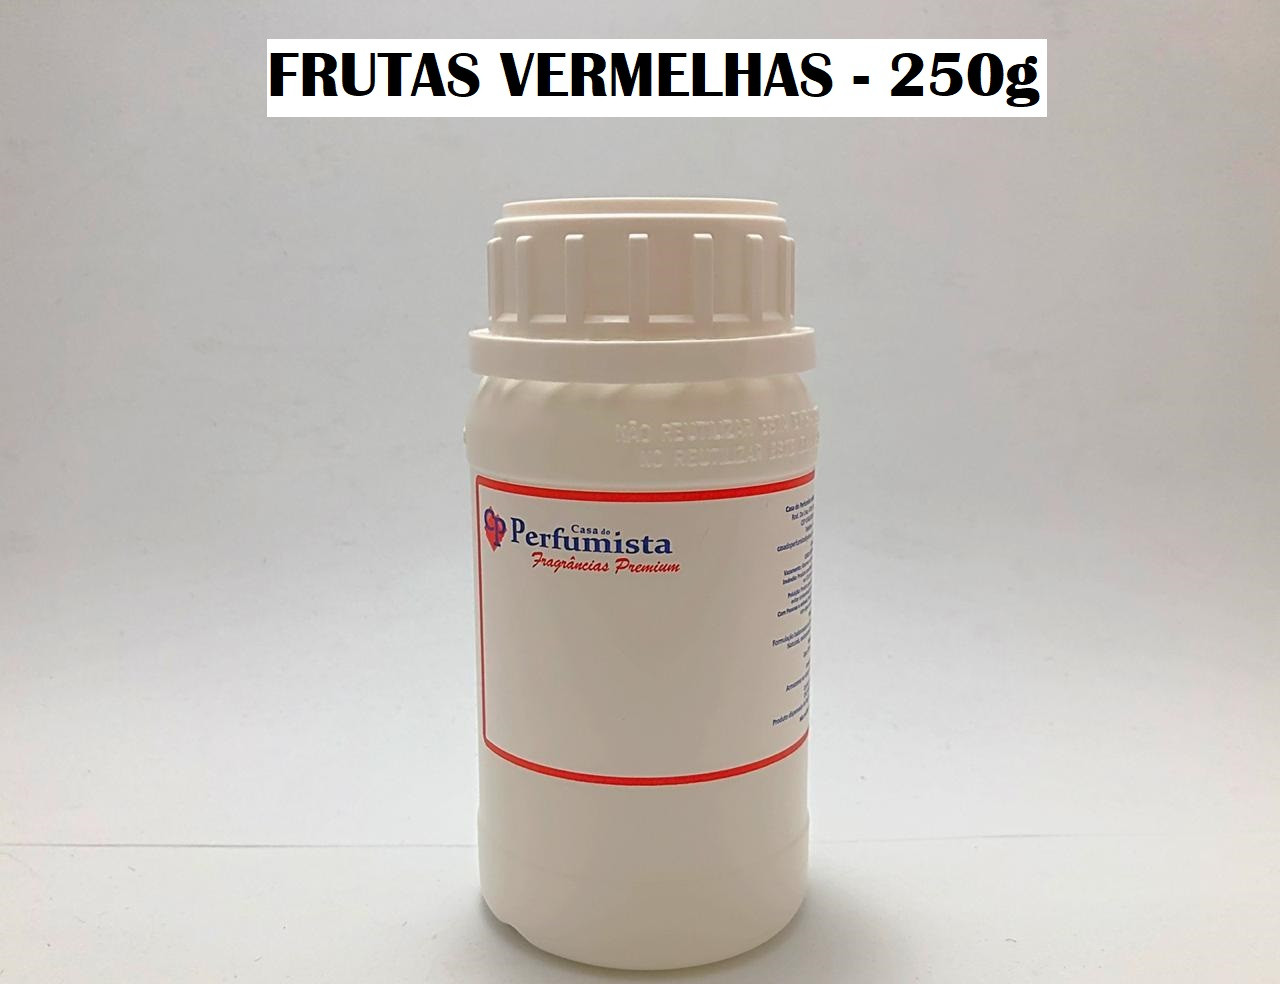 FRUTAS VERMELHAS - 250g